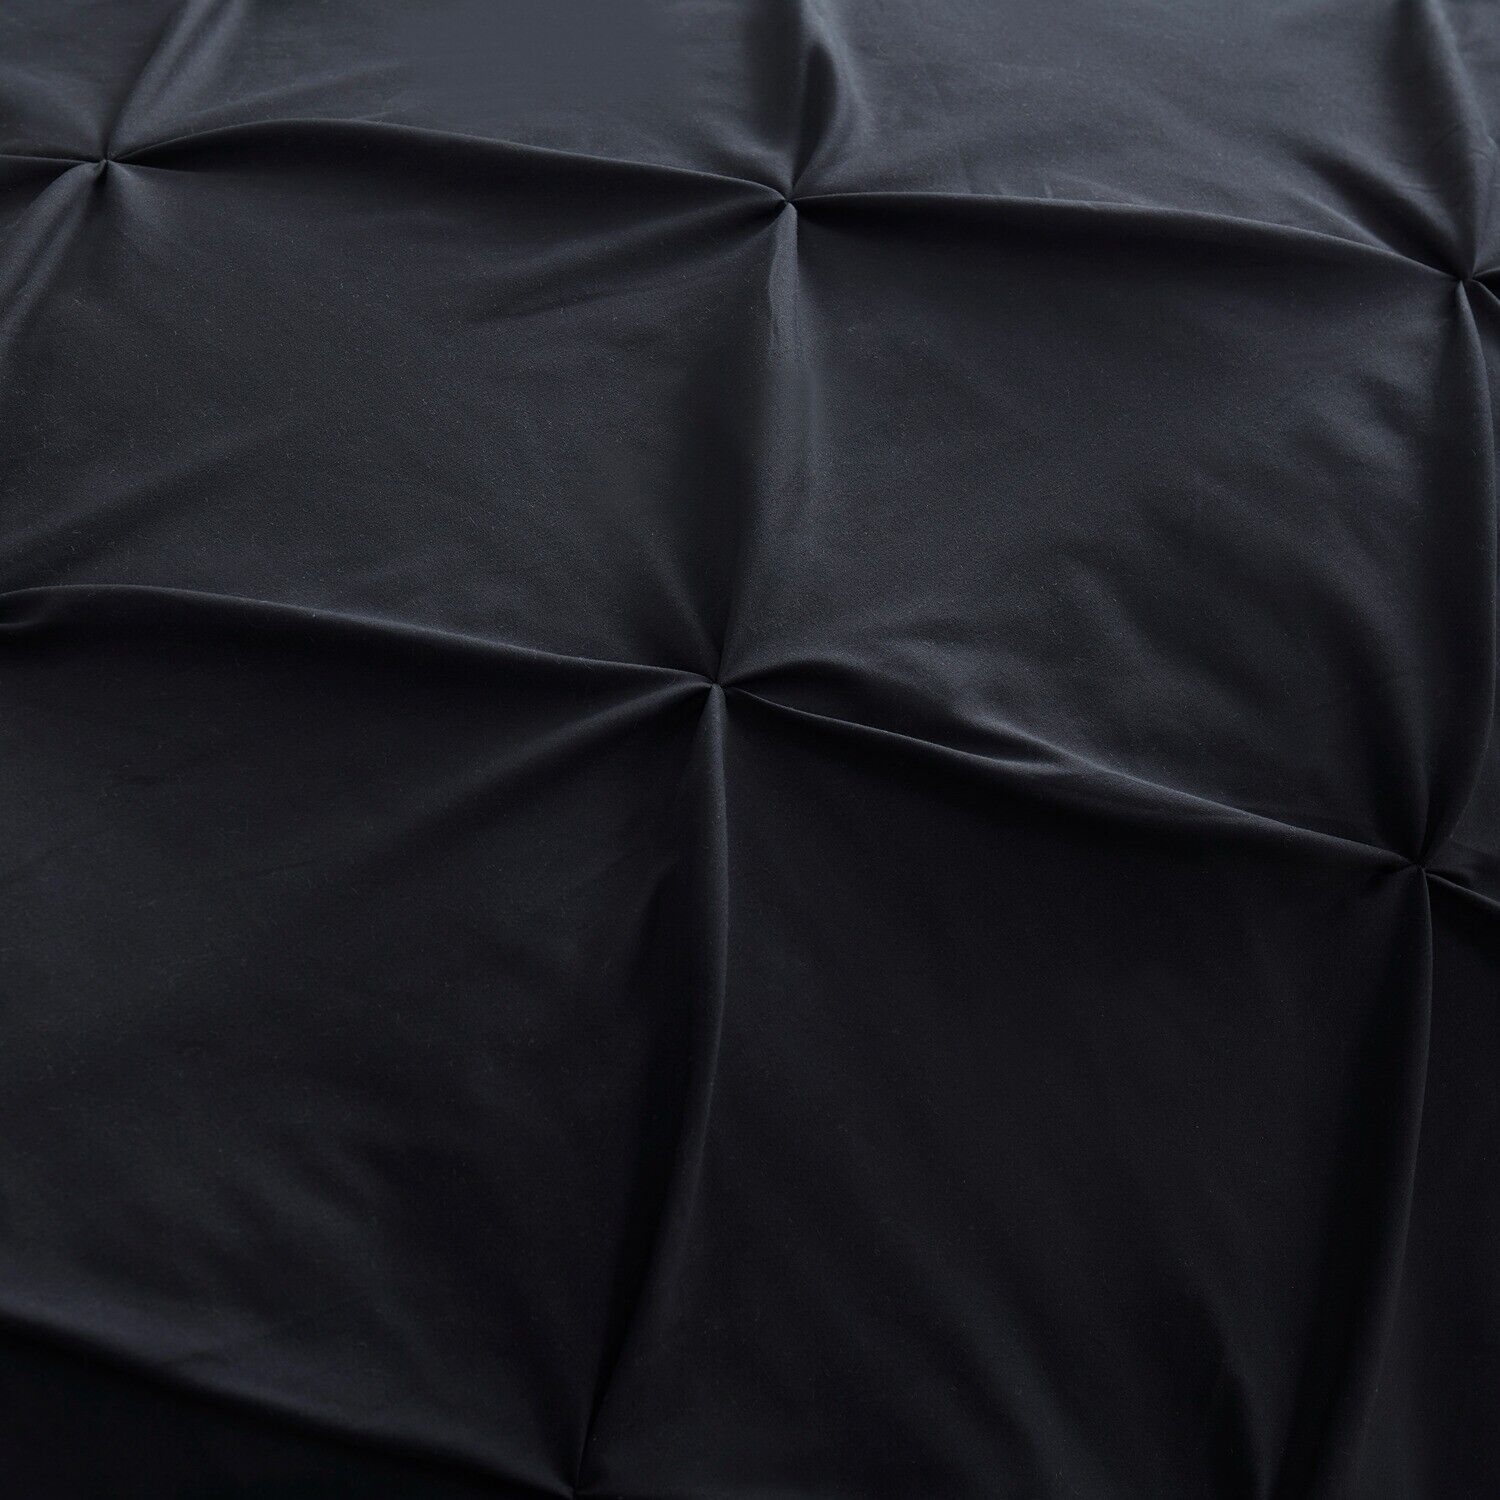 Luminous Black 6Pcs Quilt Cover Set